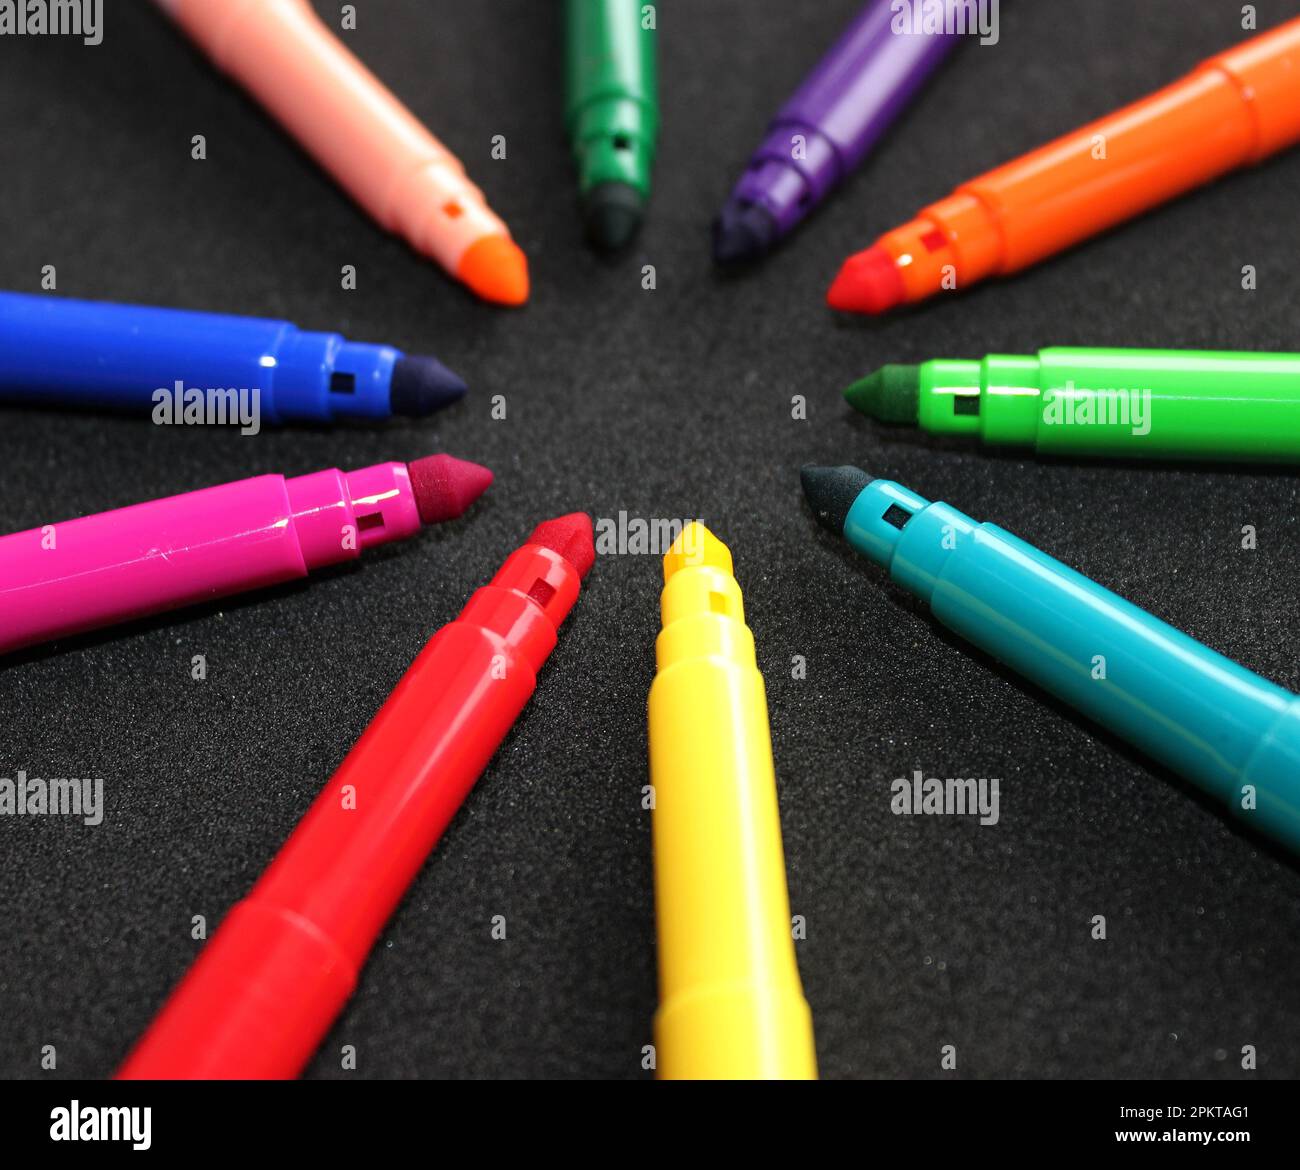 Farbenfrohe Stifte mit Filzspitze ohne Stiftkappen wie Ein Strahl auf Einem schwarzen Oberflächenfoto Stockfoto